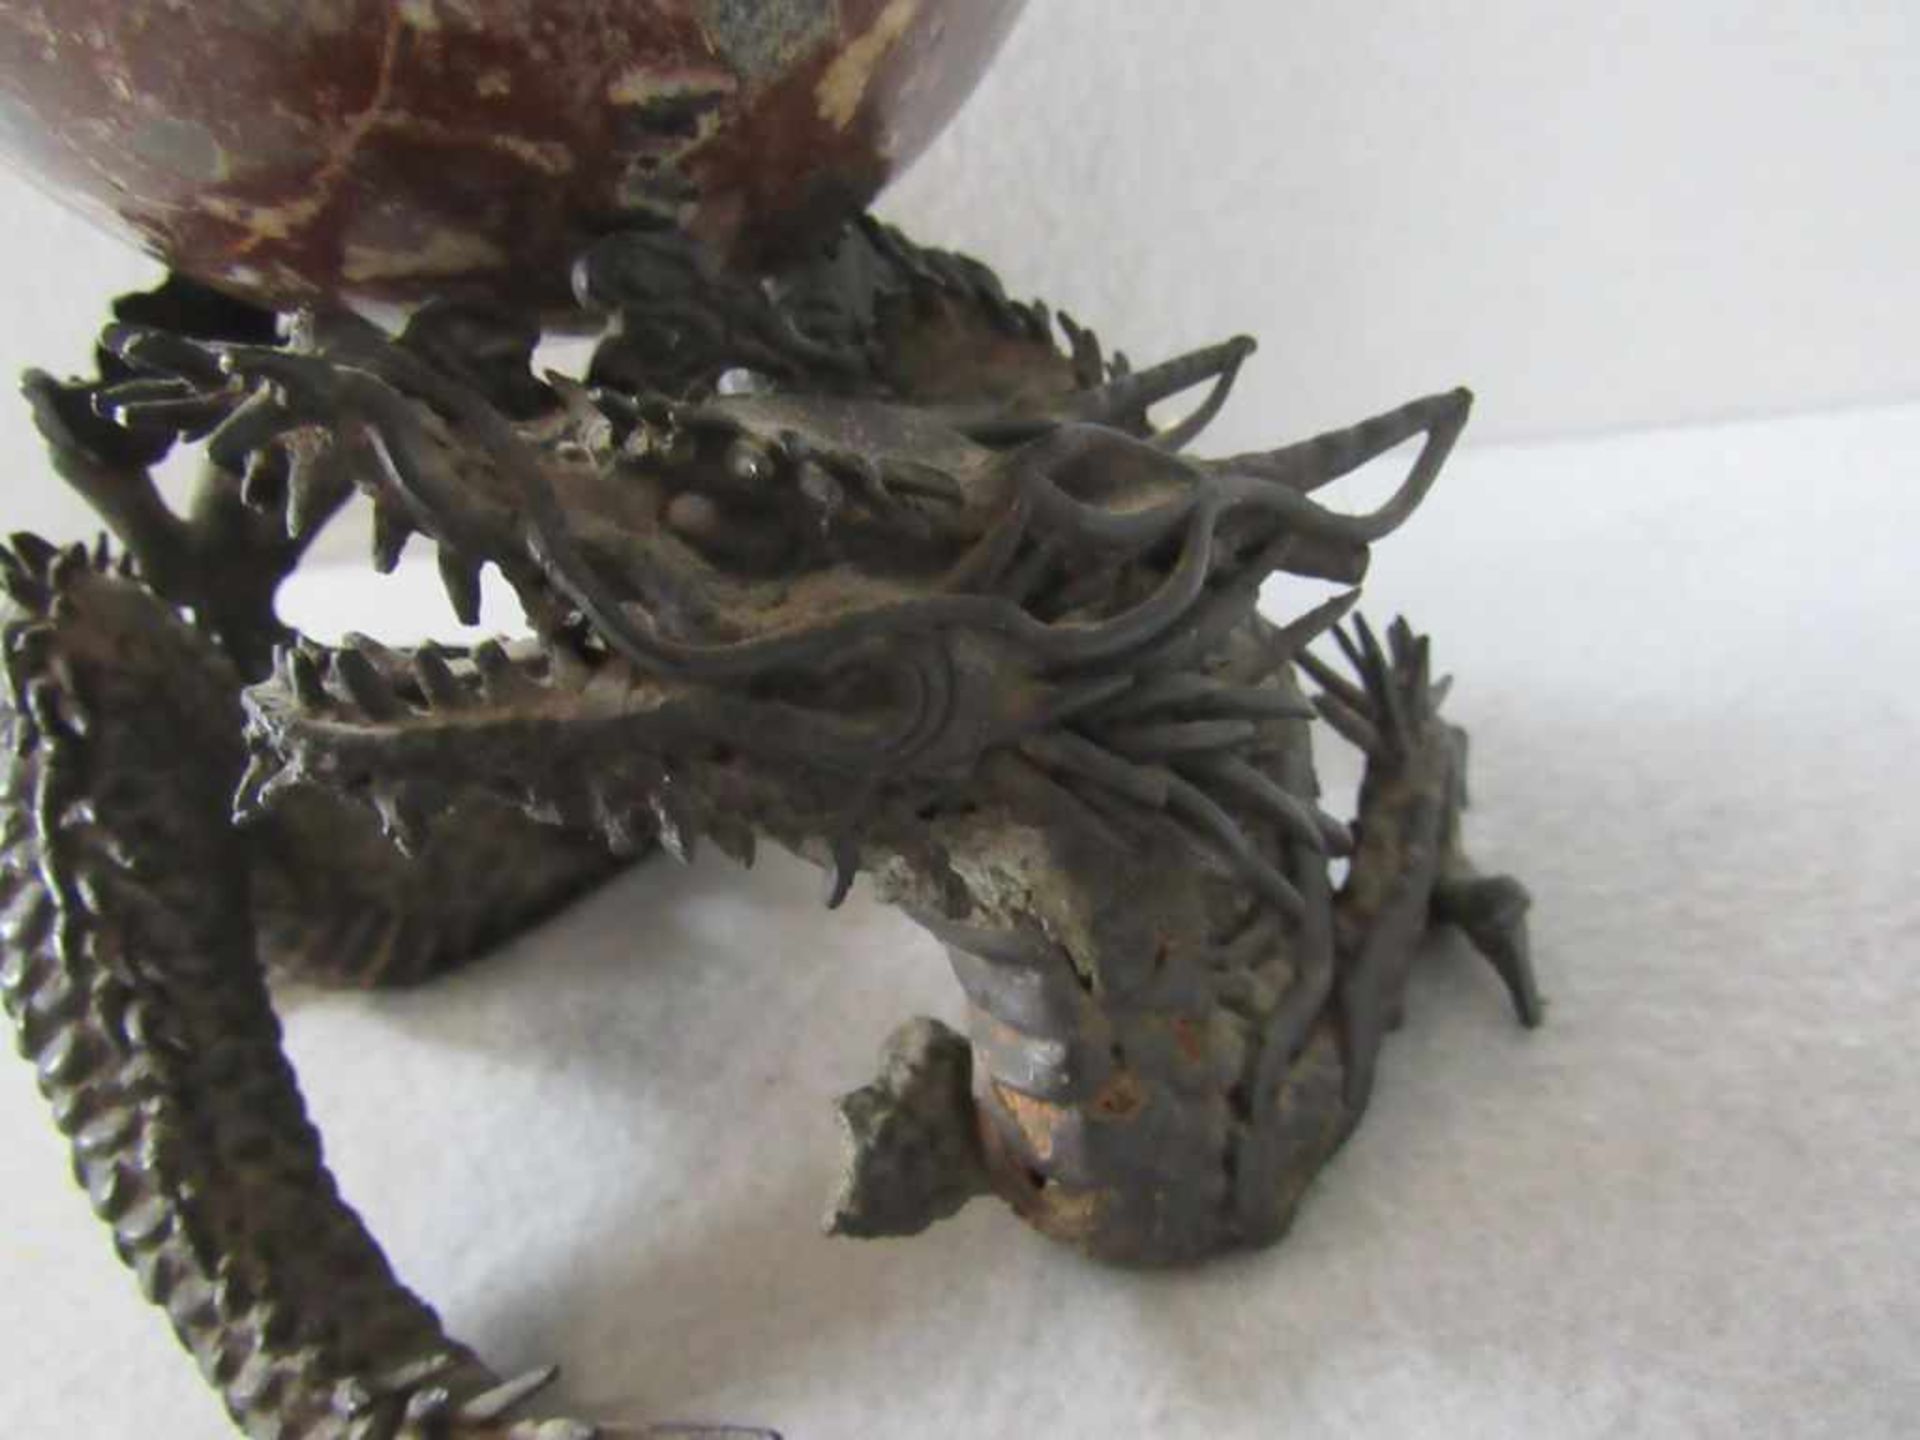 Skulptur asiatischer Drache sehr feiner Guß Bronze obenauf Marmorkugel Gesamthöhe:20cm - Bild 2 aus 3